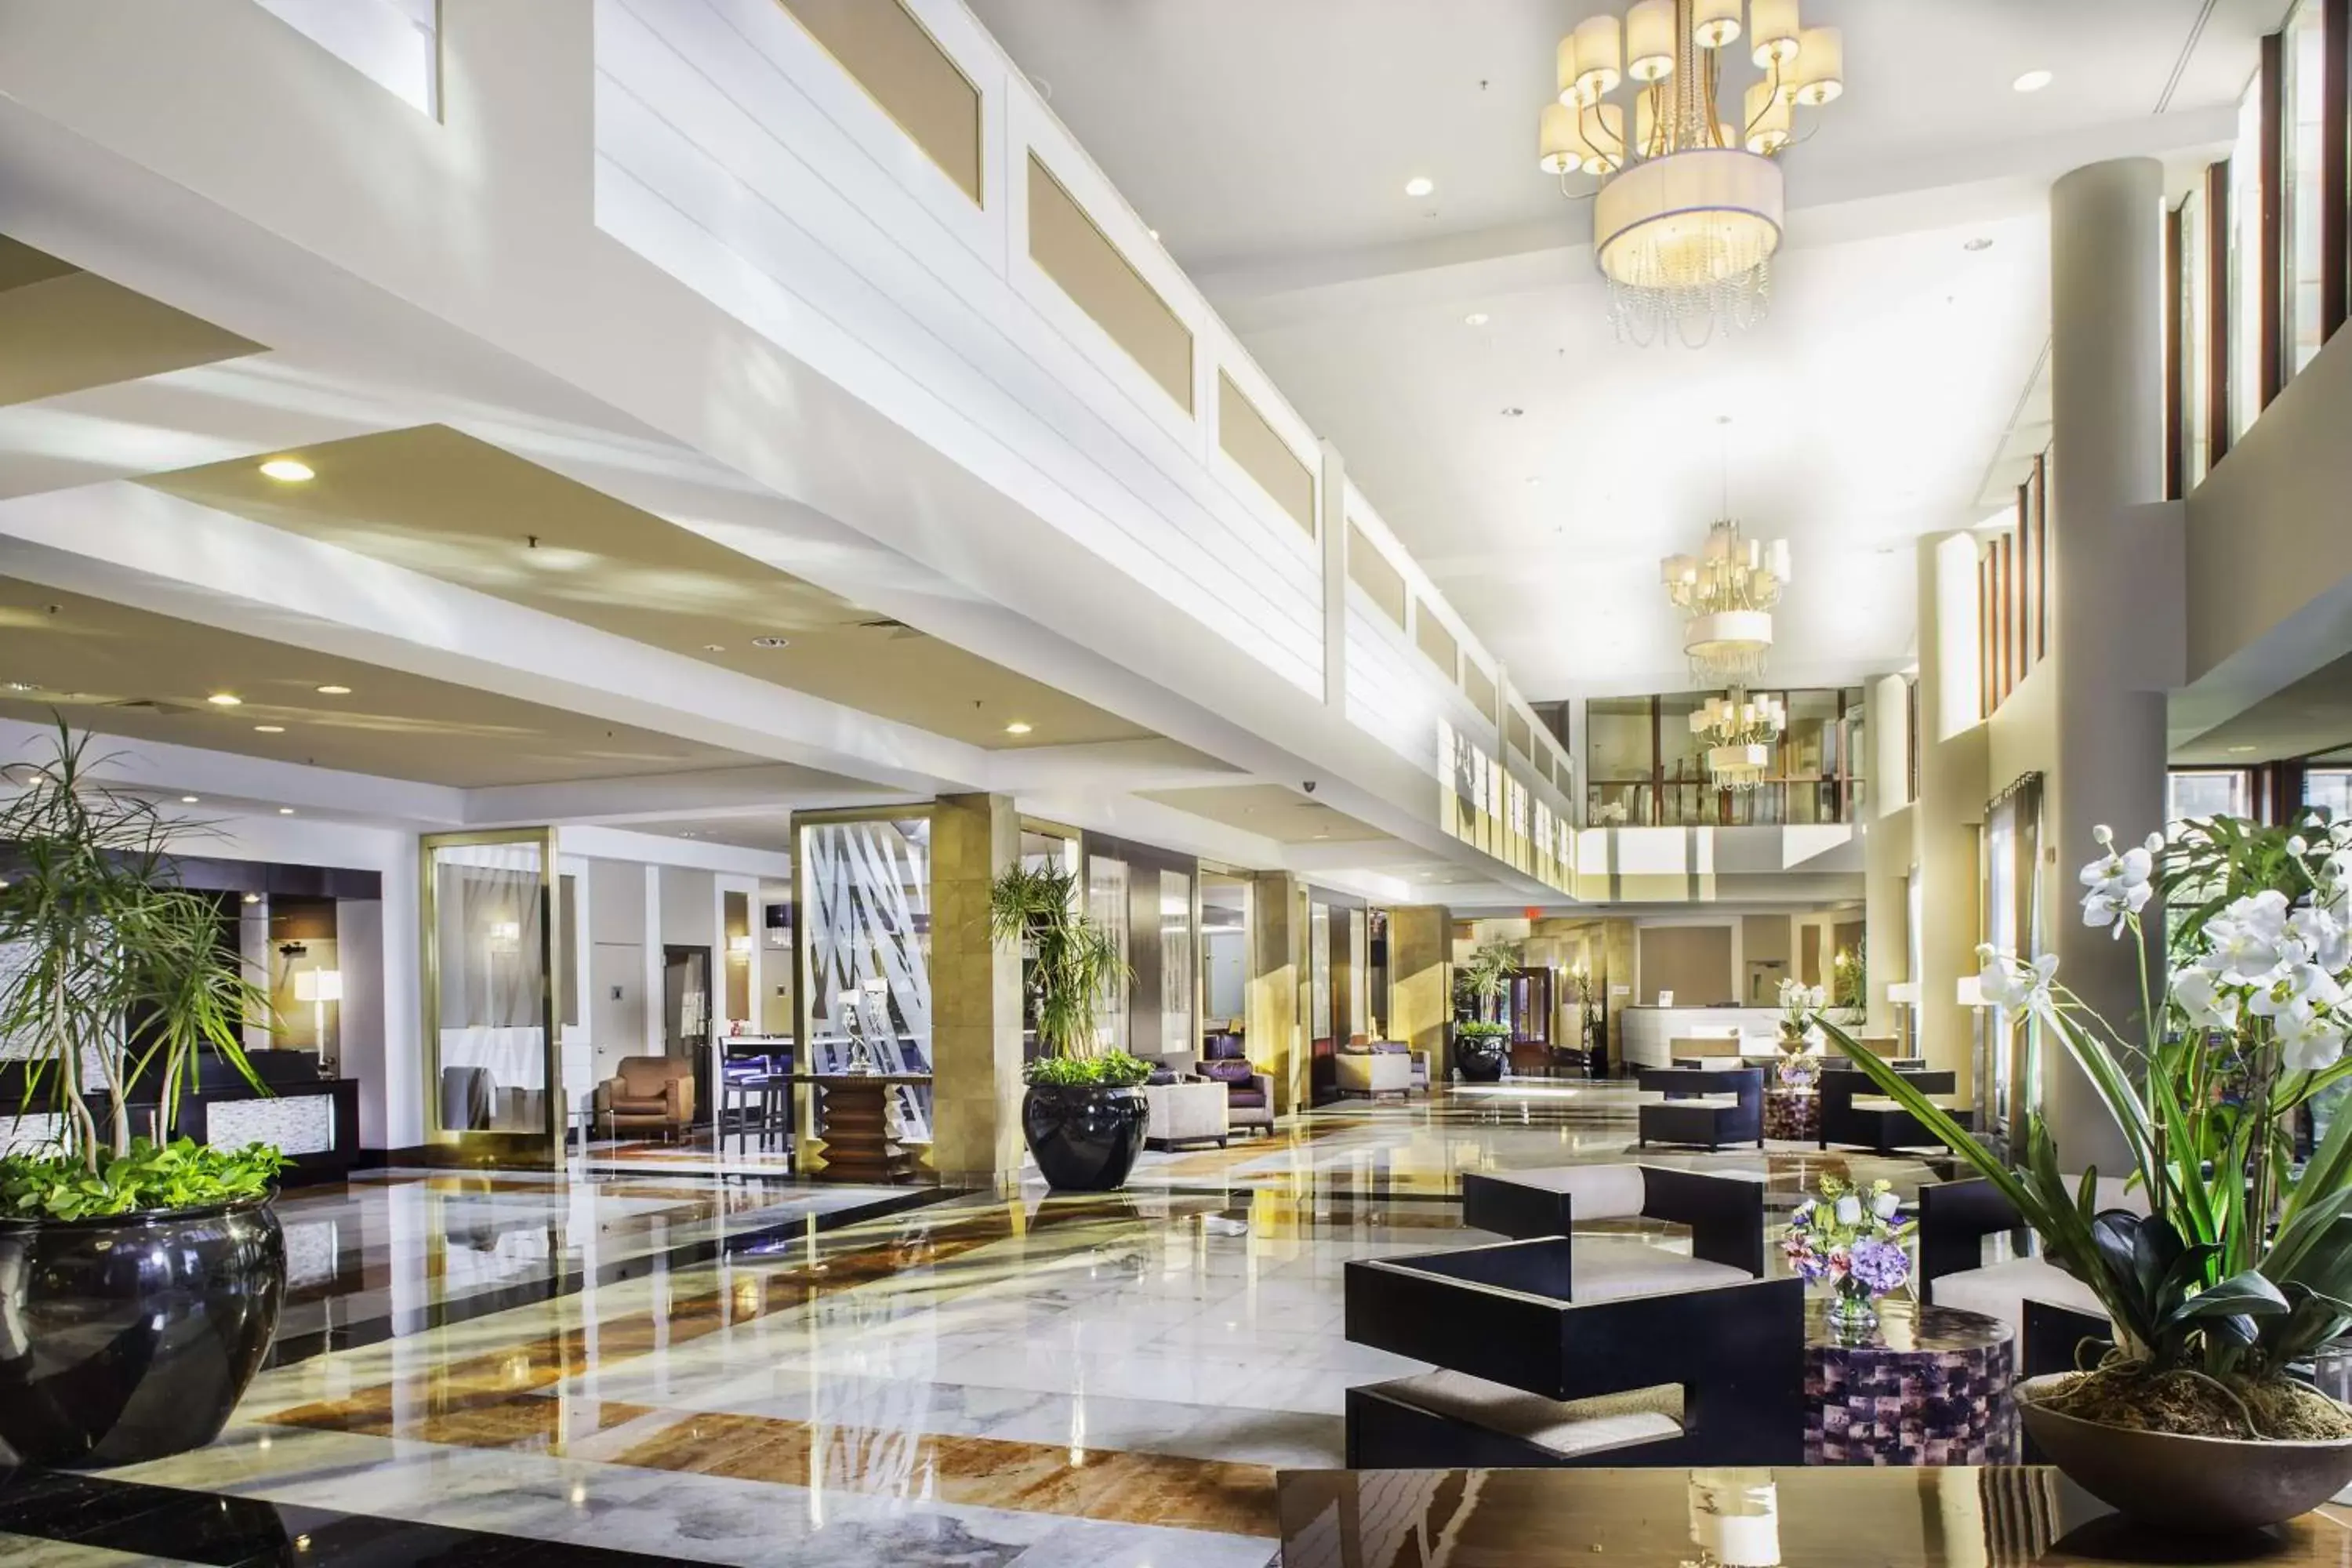 Lobby or reception, Lobby/Reception in LaGuardia Plaza Hotel